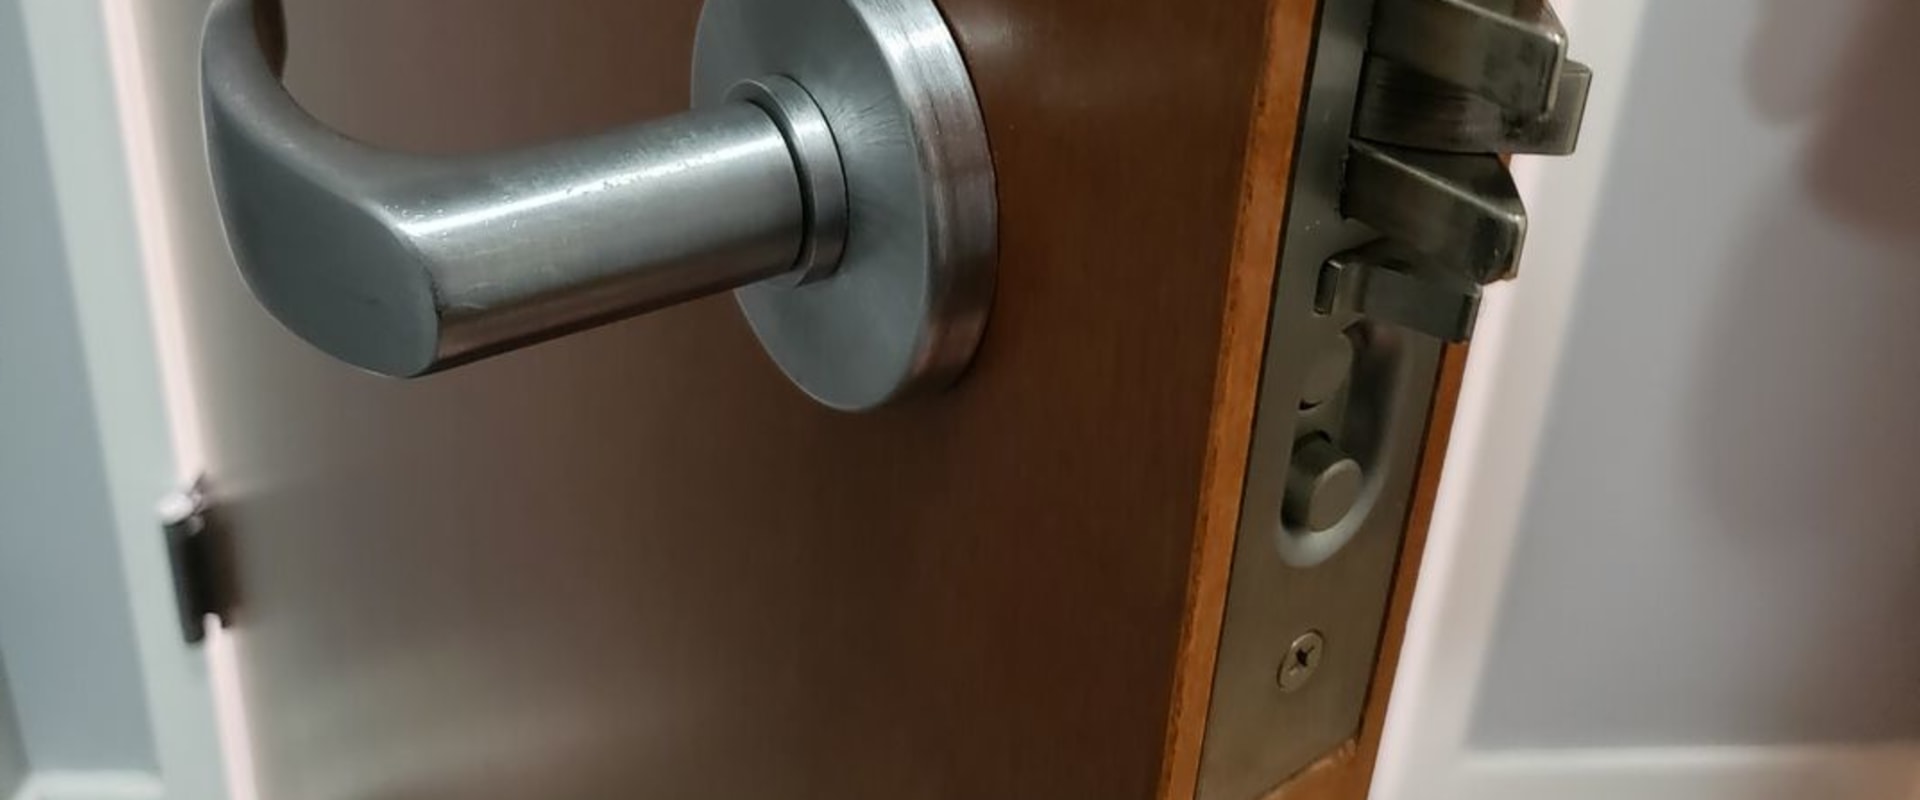 Do Residential Locksmiths Offer Deadbolt Installation Services?